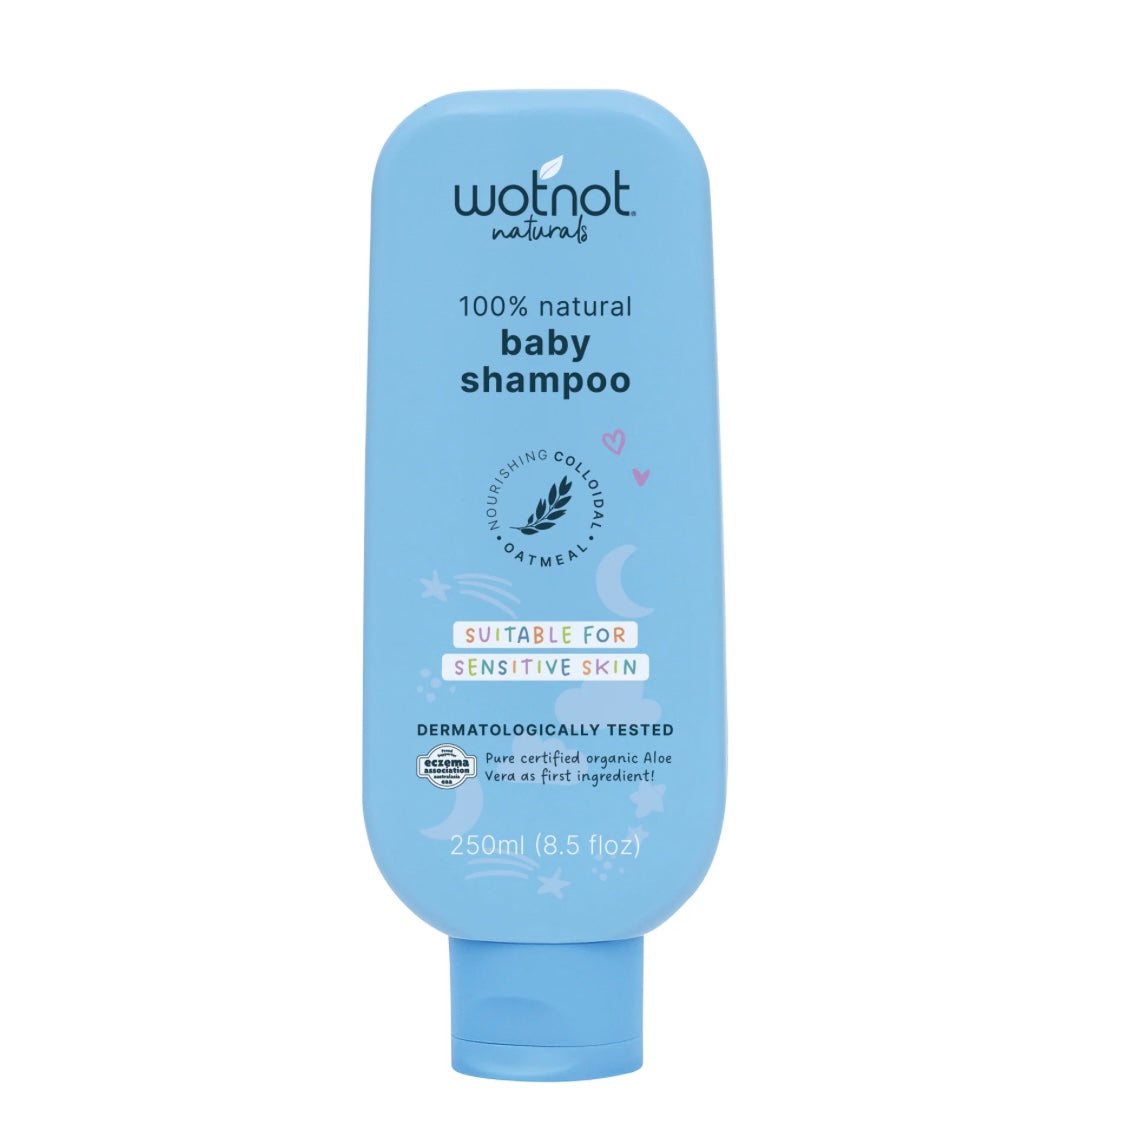 Wotnot Naturals 100% Natural Baby Shampoo 250ml